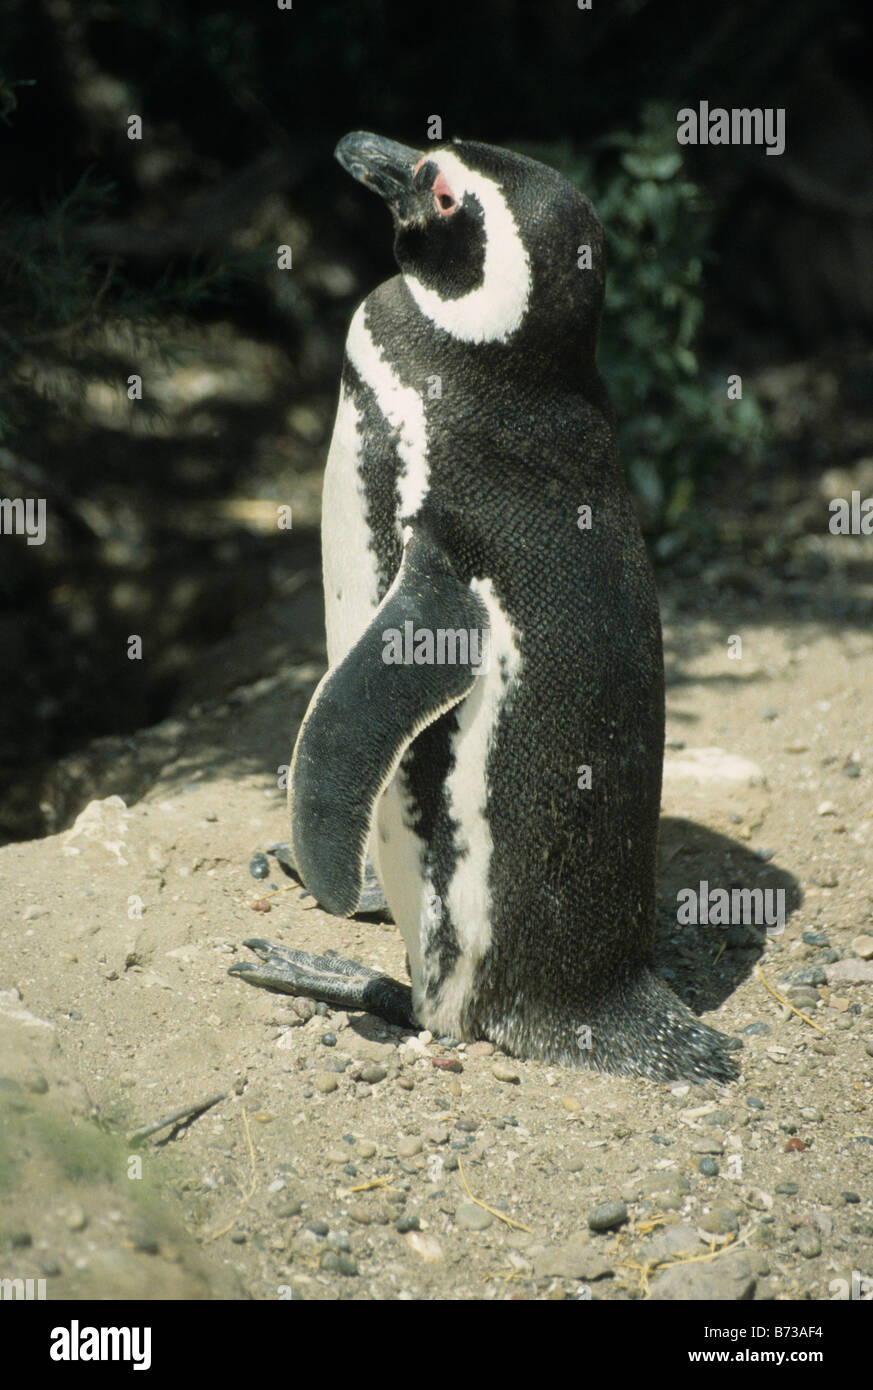 Magellanic Penguin (Spheniscus magellanicus) at Punta Tombo, Patagonia, Argentina Stock Photo